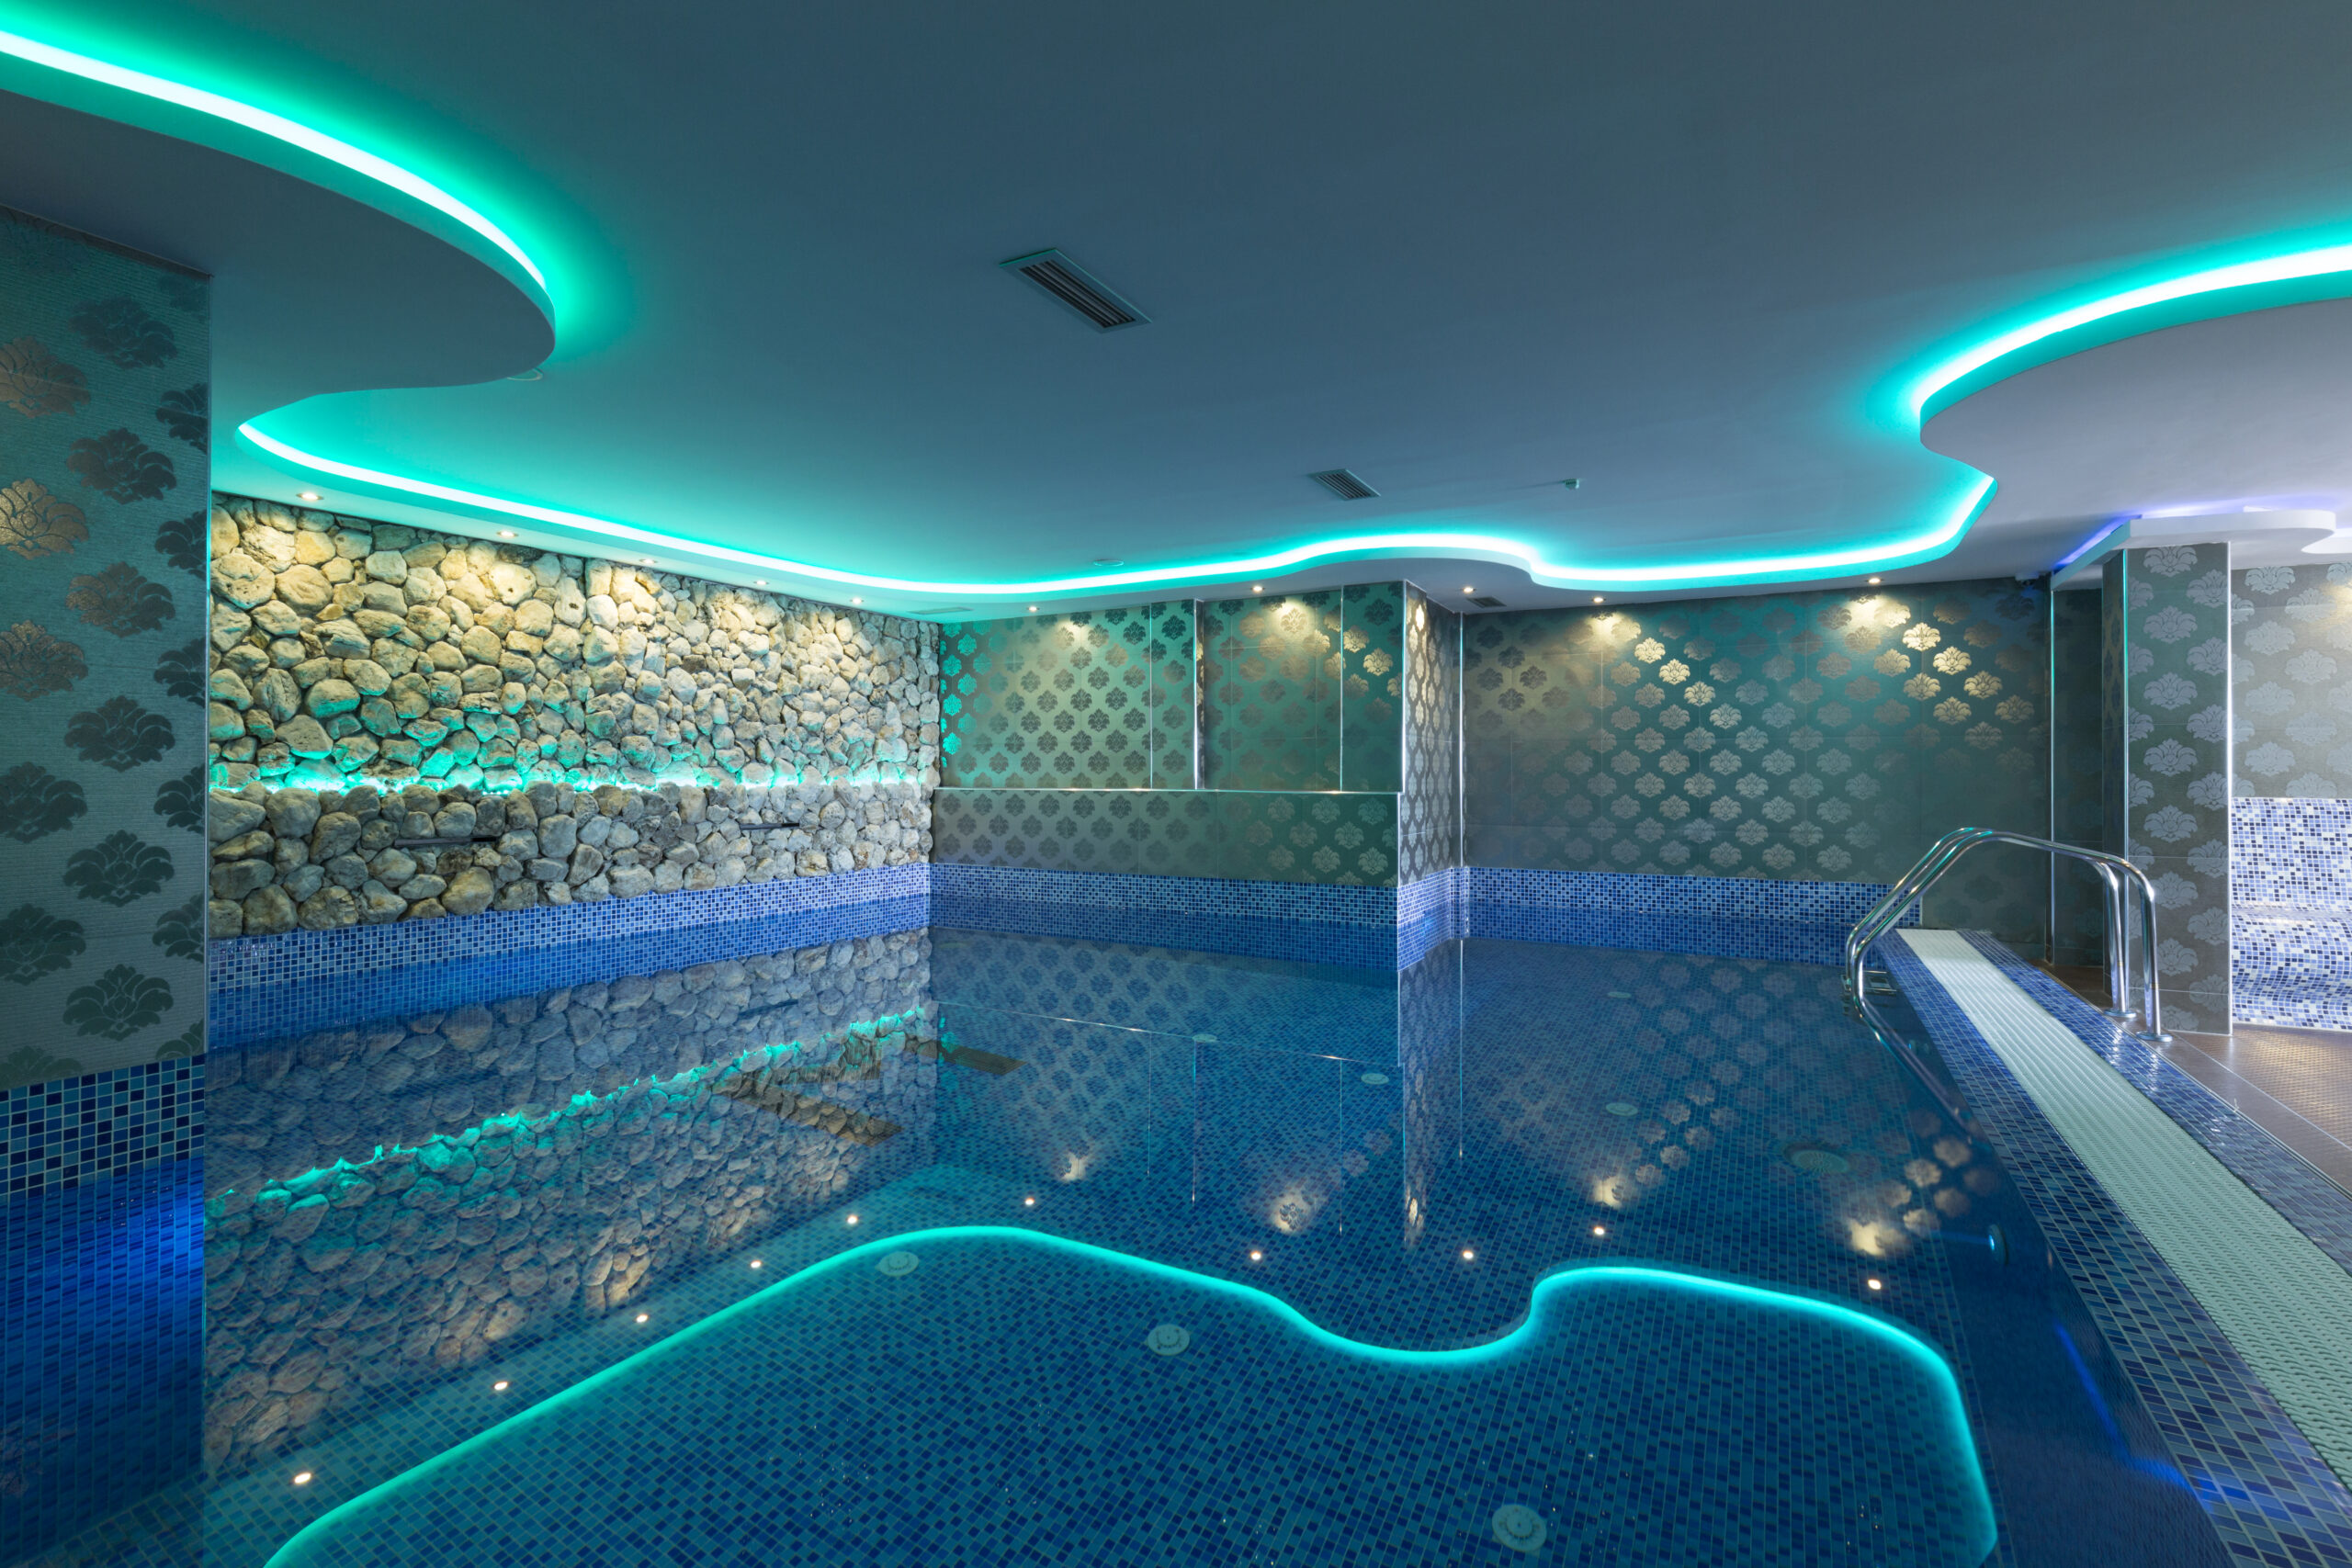 Indoor pool lighting design, showcasing various fixtures and arrangements